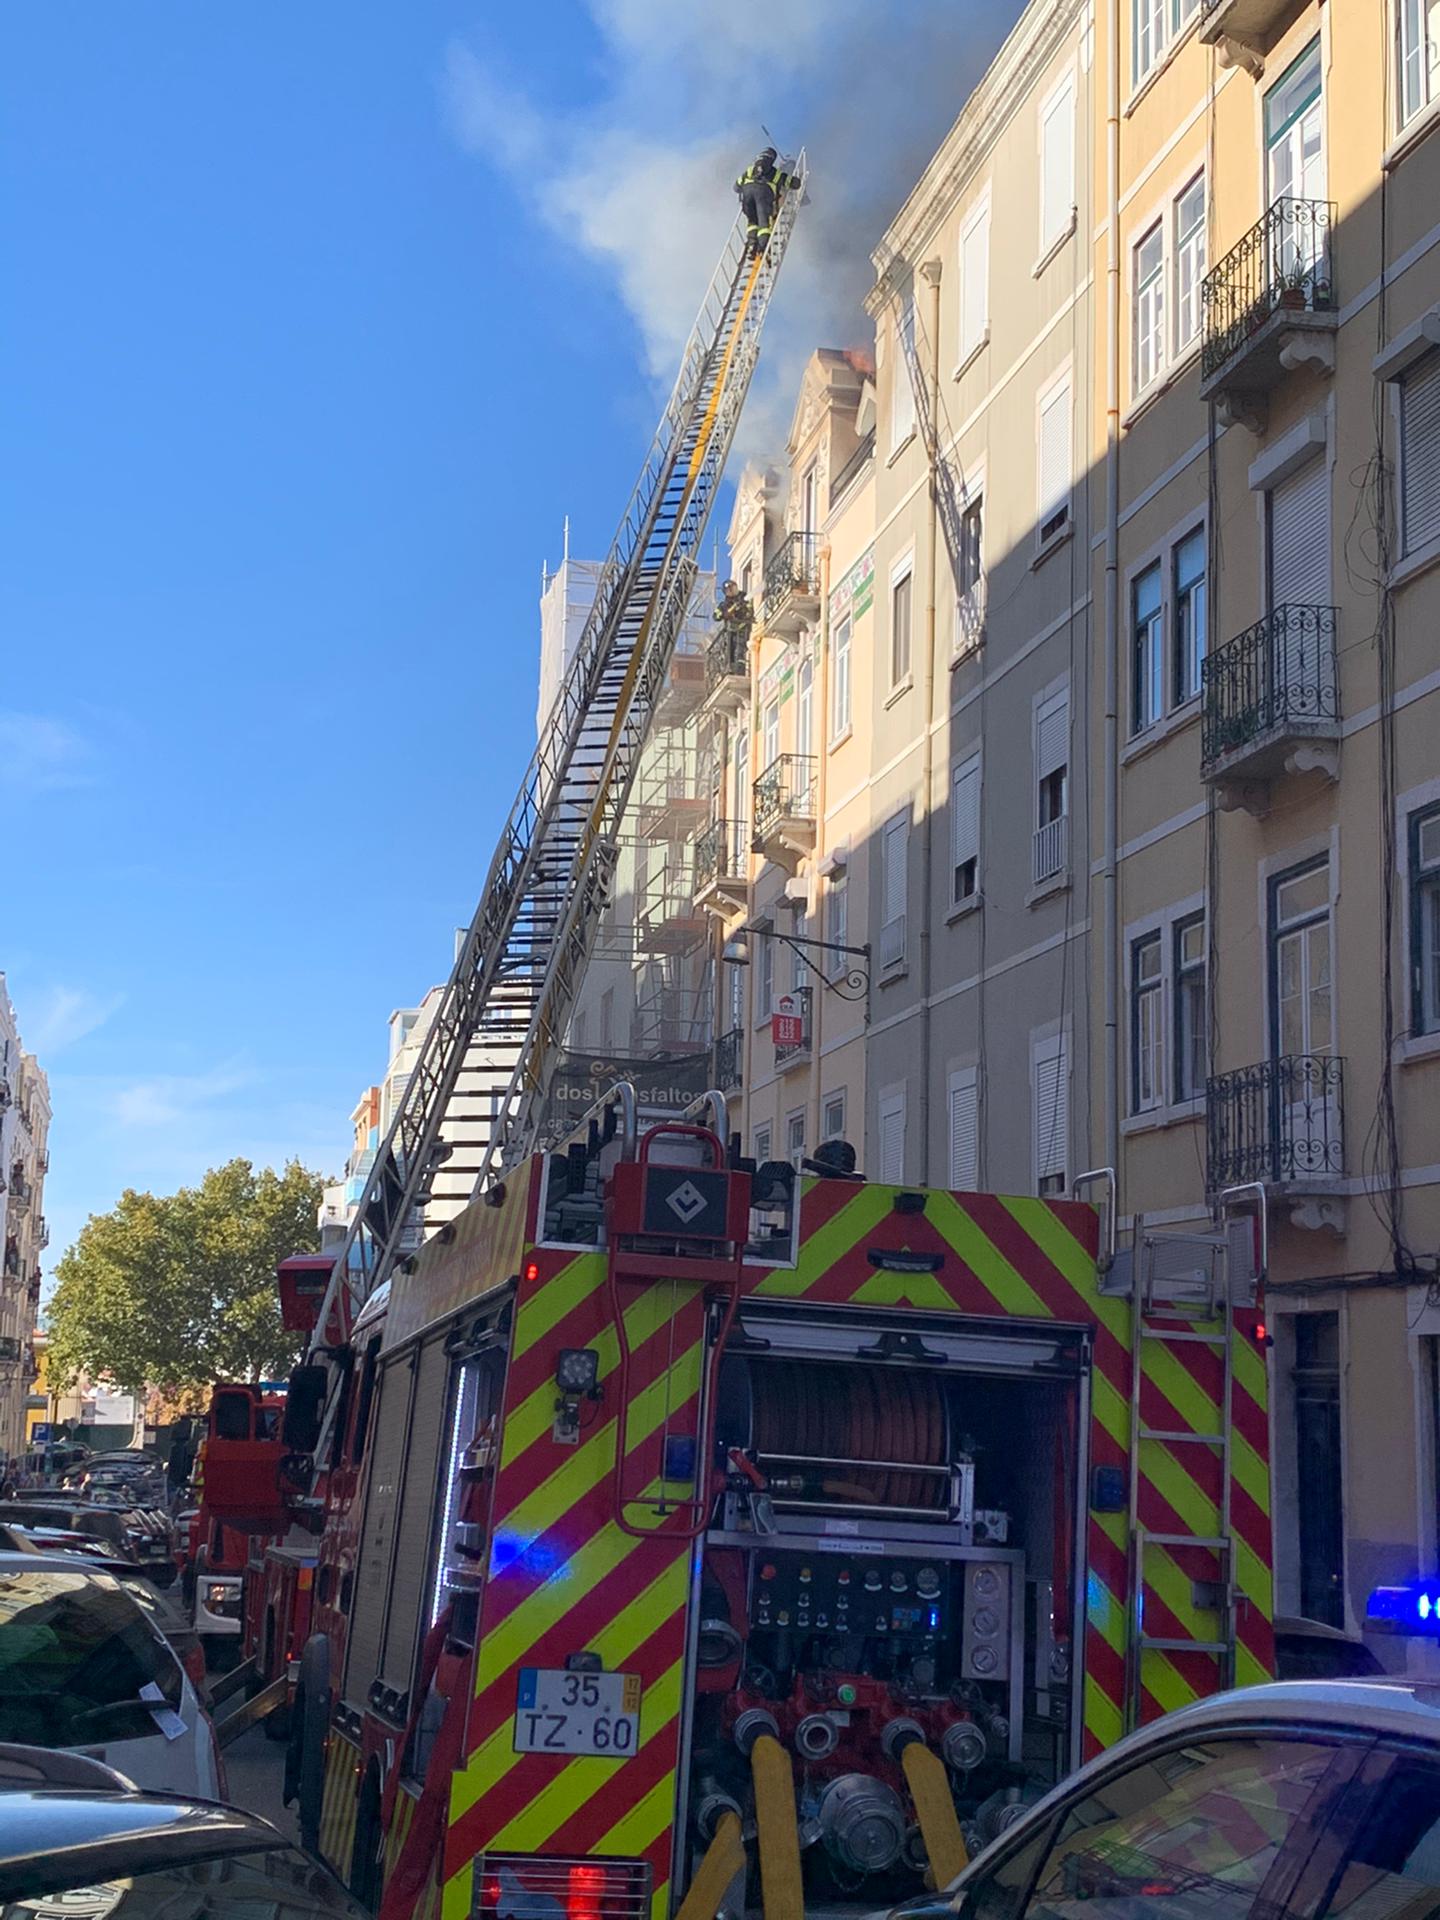 Incêndio em prédio de Campo de Ourique em Lisboa | VÍDEOS